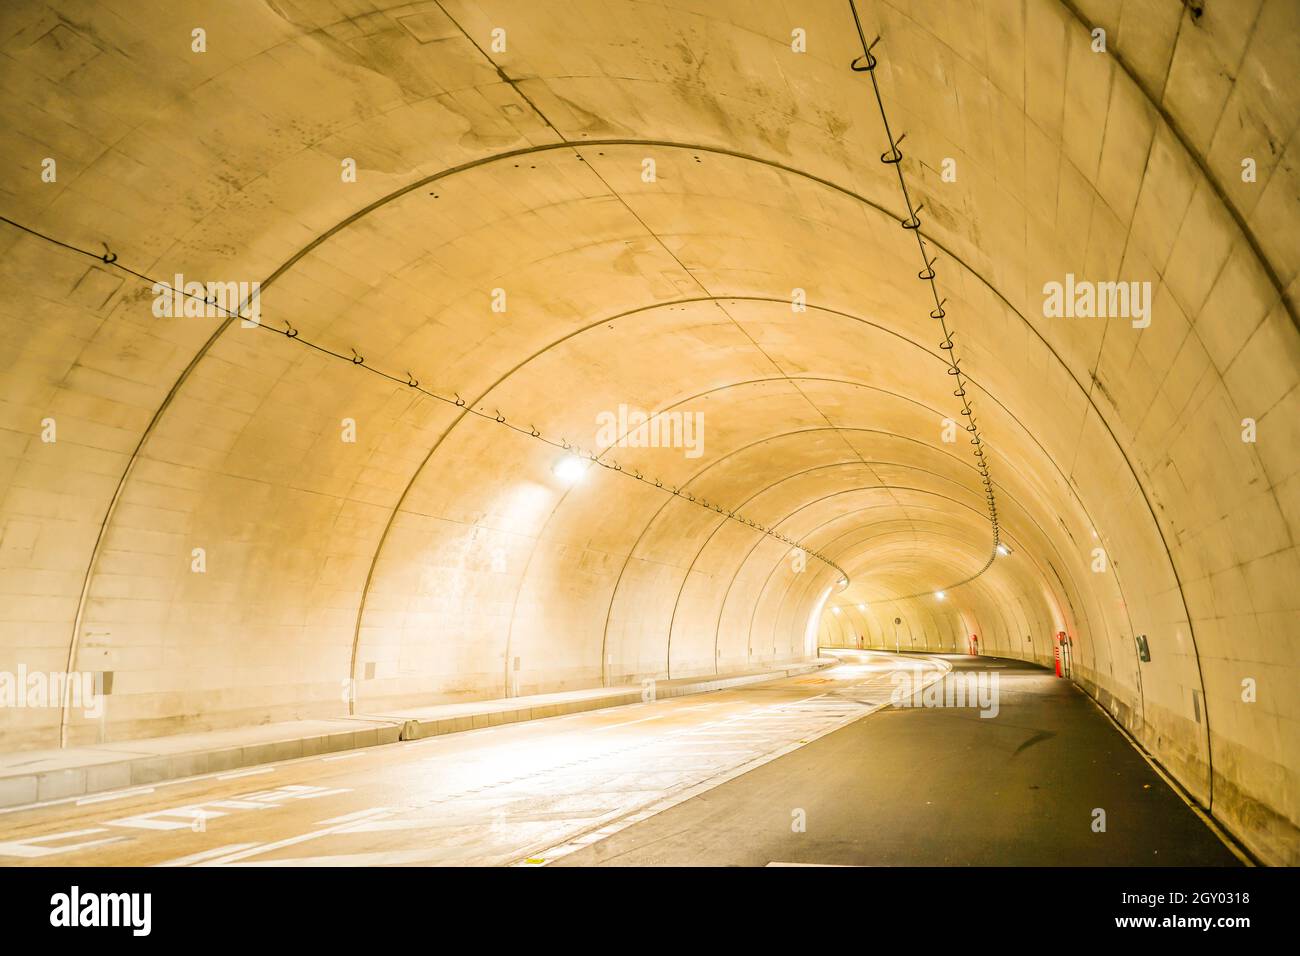 Image du tunnel. Lieu de tournage : préfecture de kanagawa, ville de Yokohama Banque D'Images